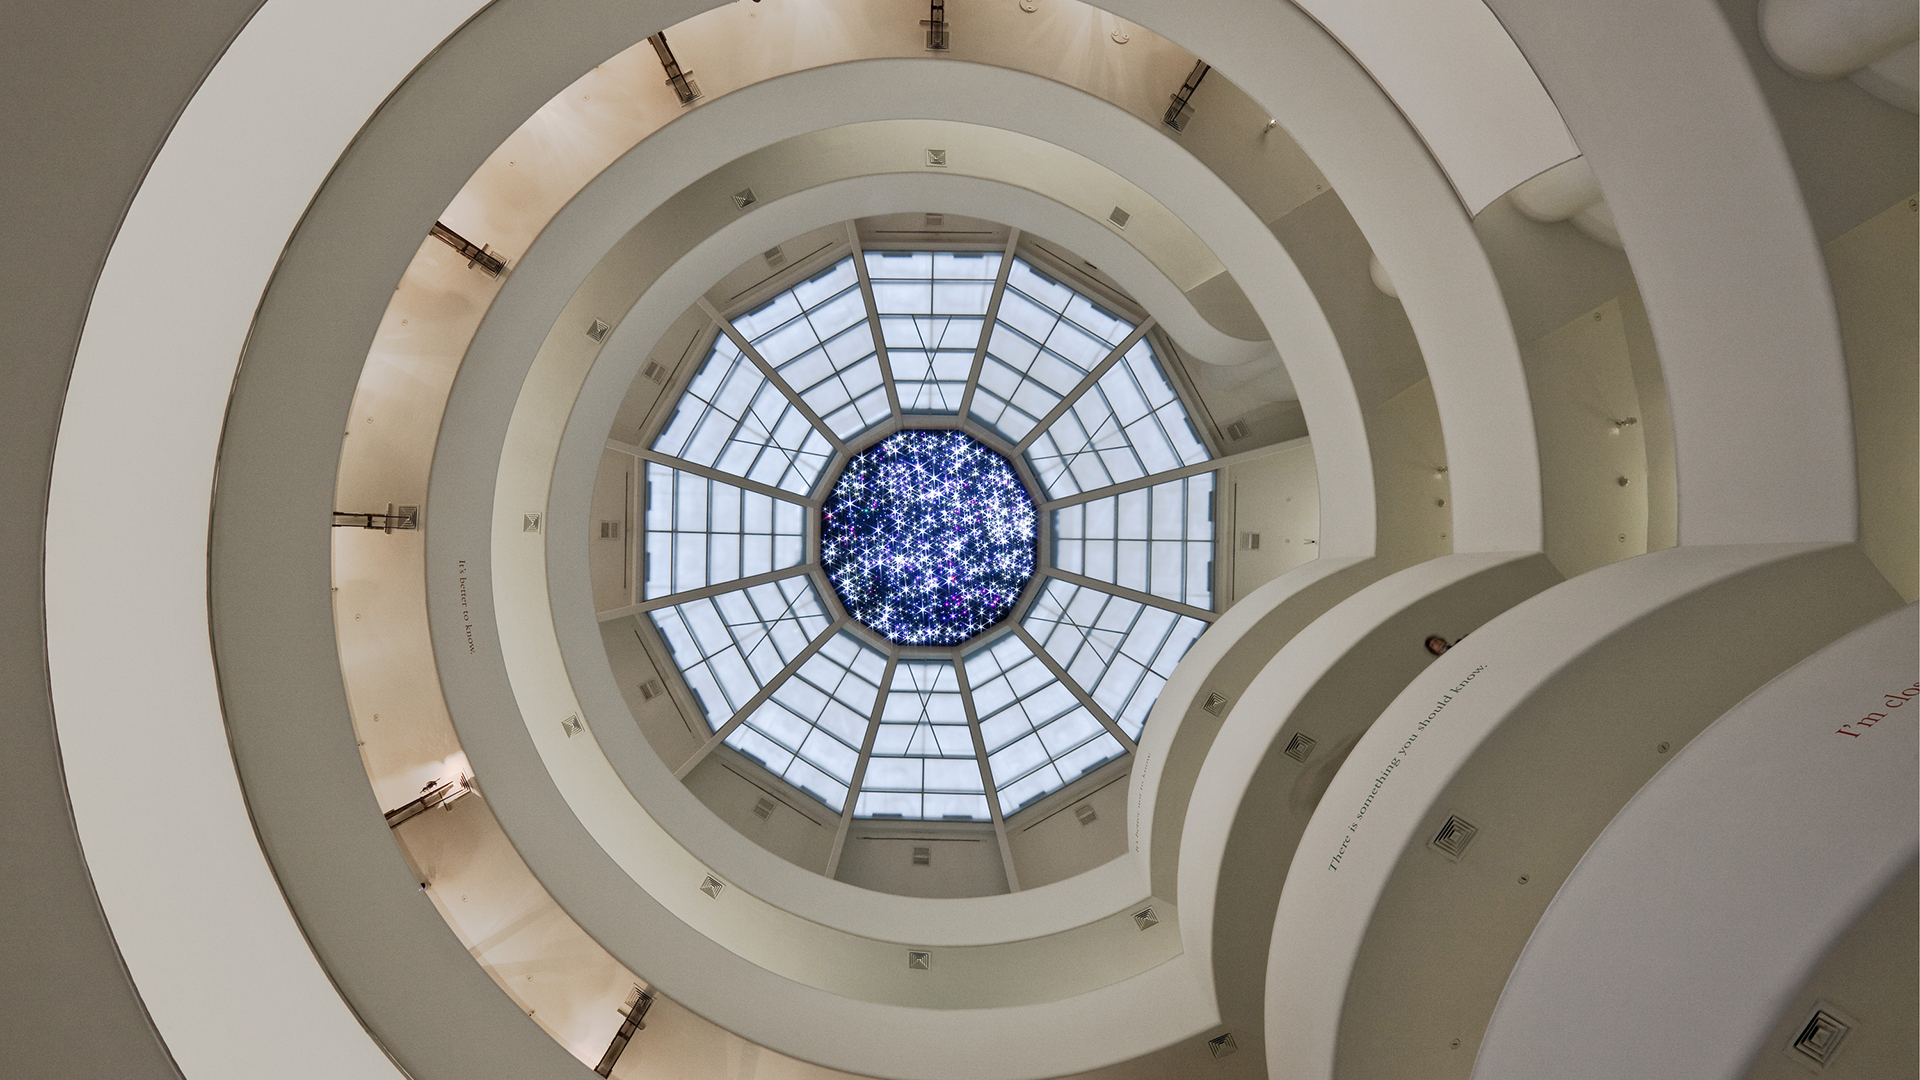 Viện bảo tàng và Quỹ Guggenheim: Khám phá những tác phẩm nghệ thuật tuyệt đẹp và độc đáo tại Viện bảo tàng và Quỹ Guggenheim qua hình ảnh. Được thiết kế bởi kiến trúc sư nổi tiếng Frank Lloyd Wright, không gian của viện bảo tàng và quỹ Guggenheim tuyệt đẹp và đầy ấn tượng. Hãy xem hình ảnh để trải nghiệm sự tuyệt vời của nơi này.